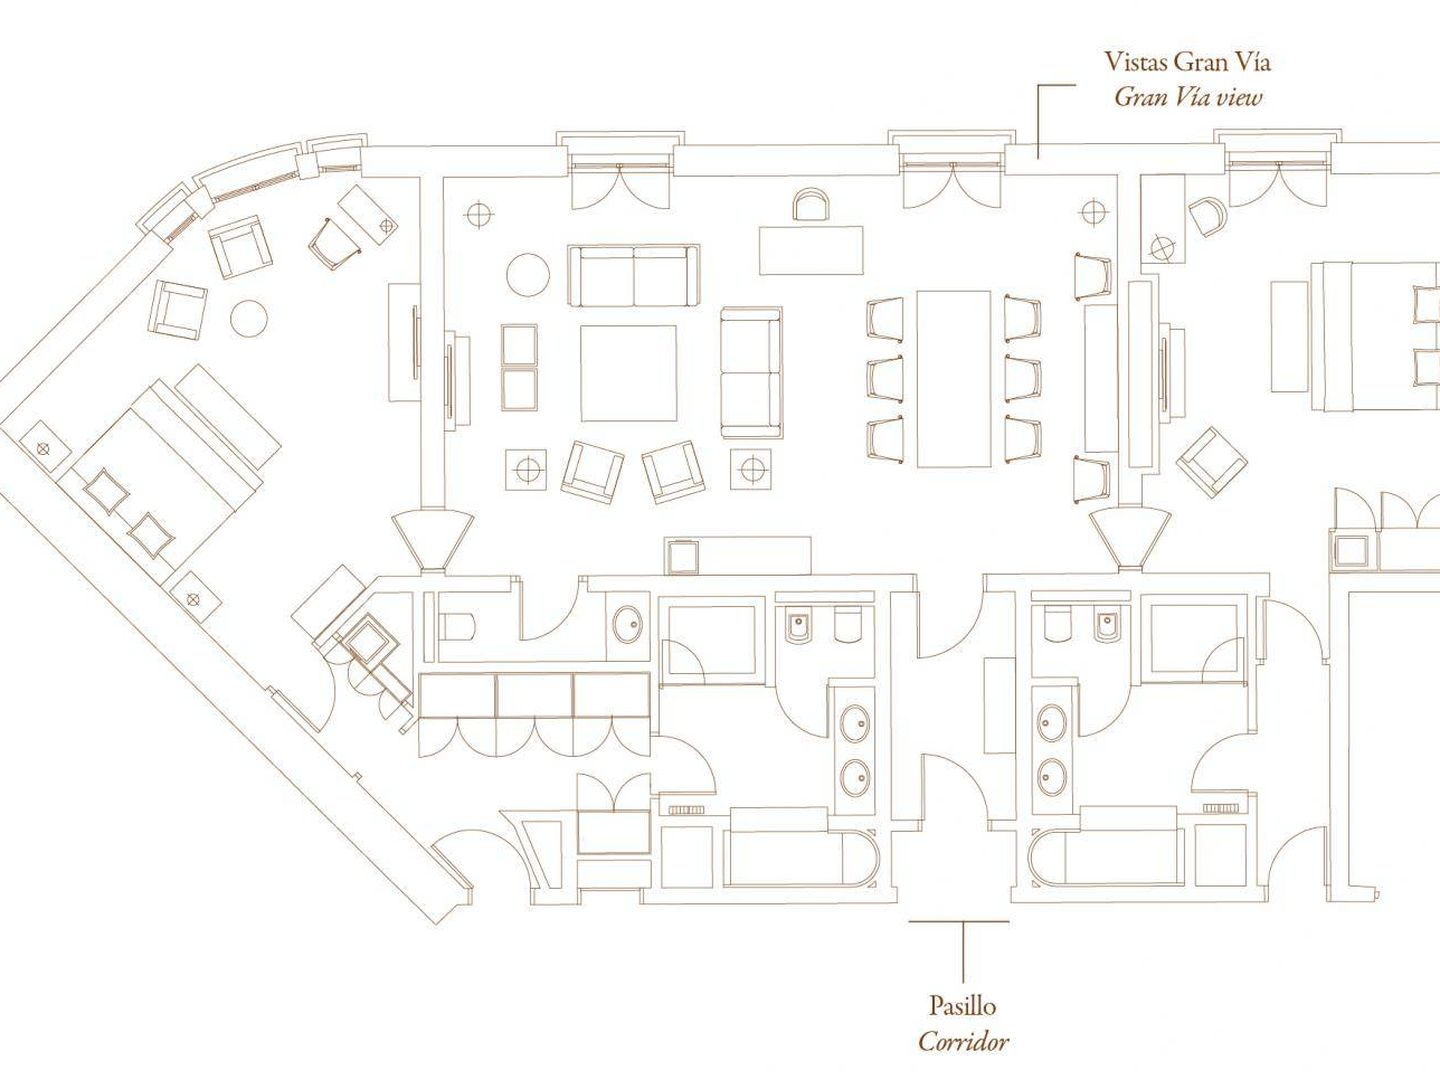 Plano de la suite en la que se ha alojado Woody Allen.